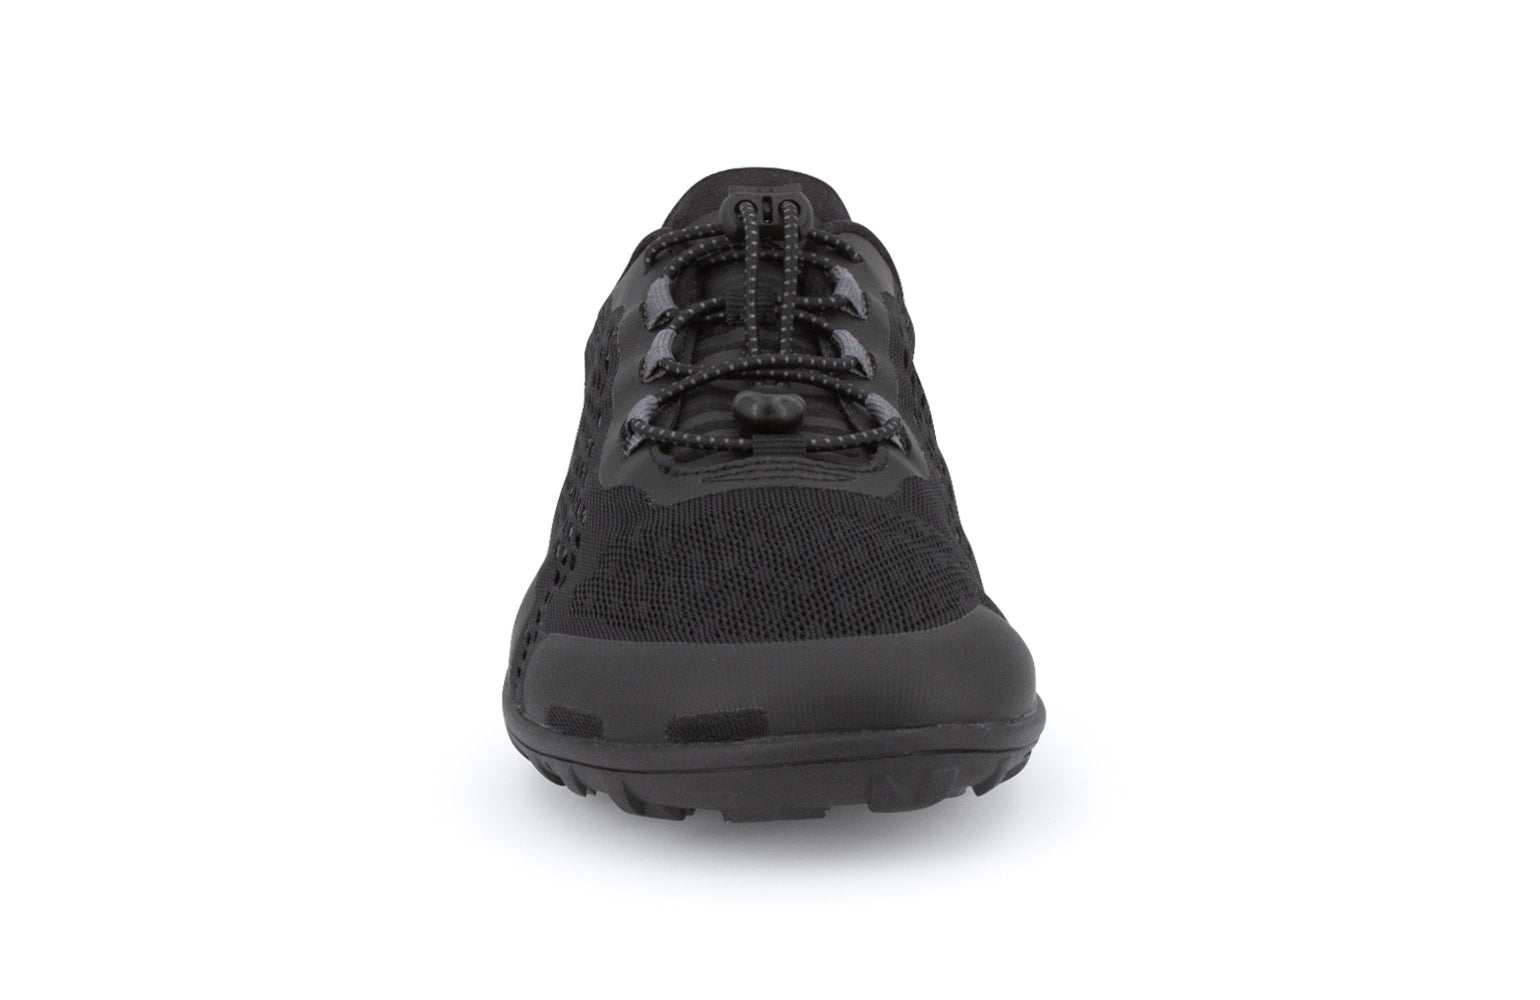 Xero Shoes Aqua X Sport barfods vand træningssko til mænd i farven black, forfra